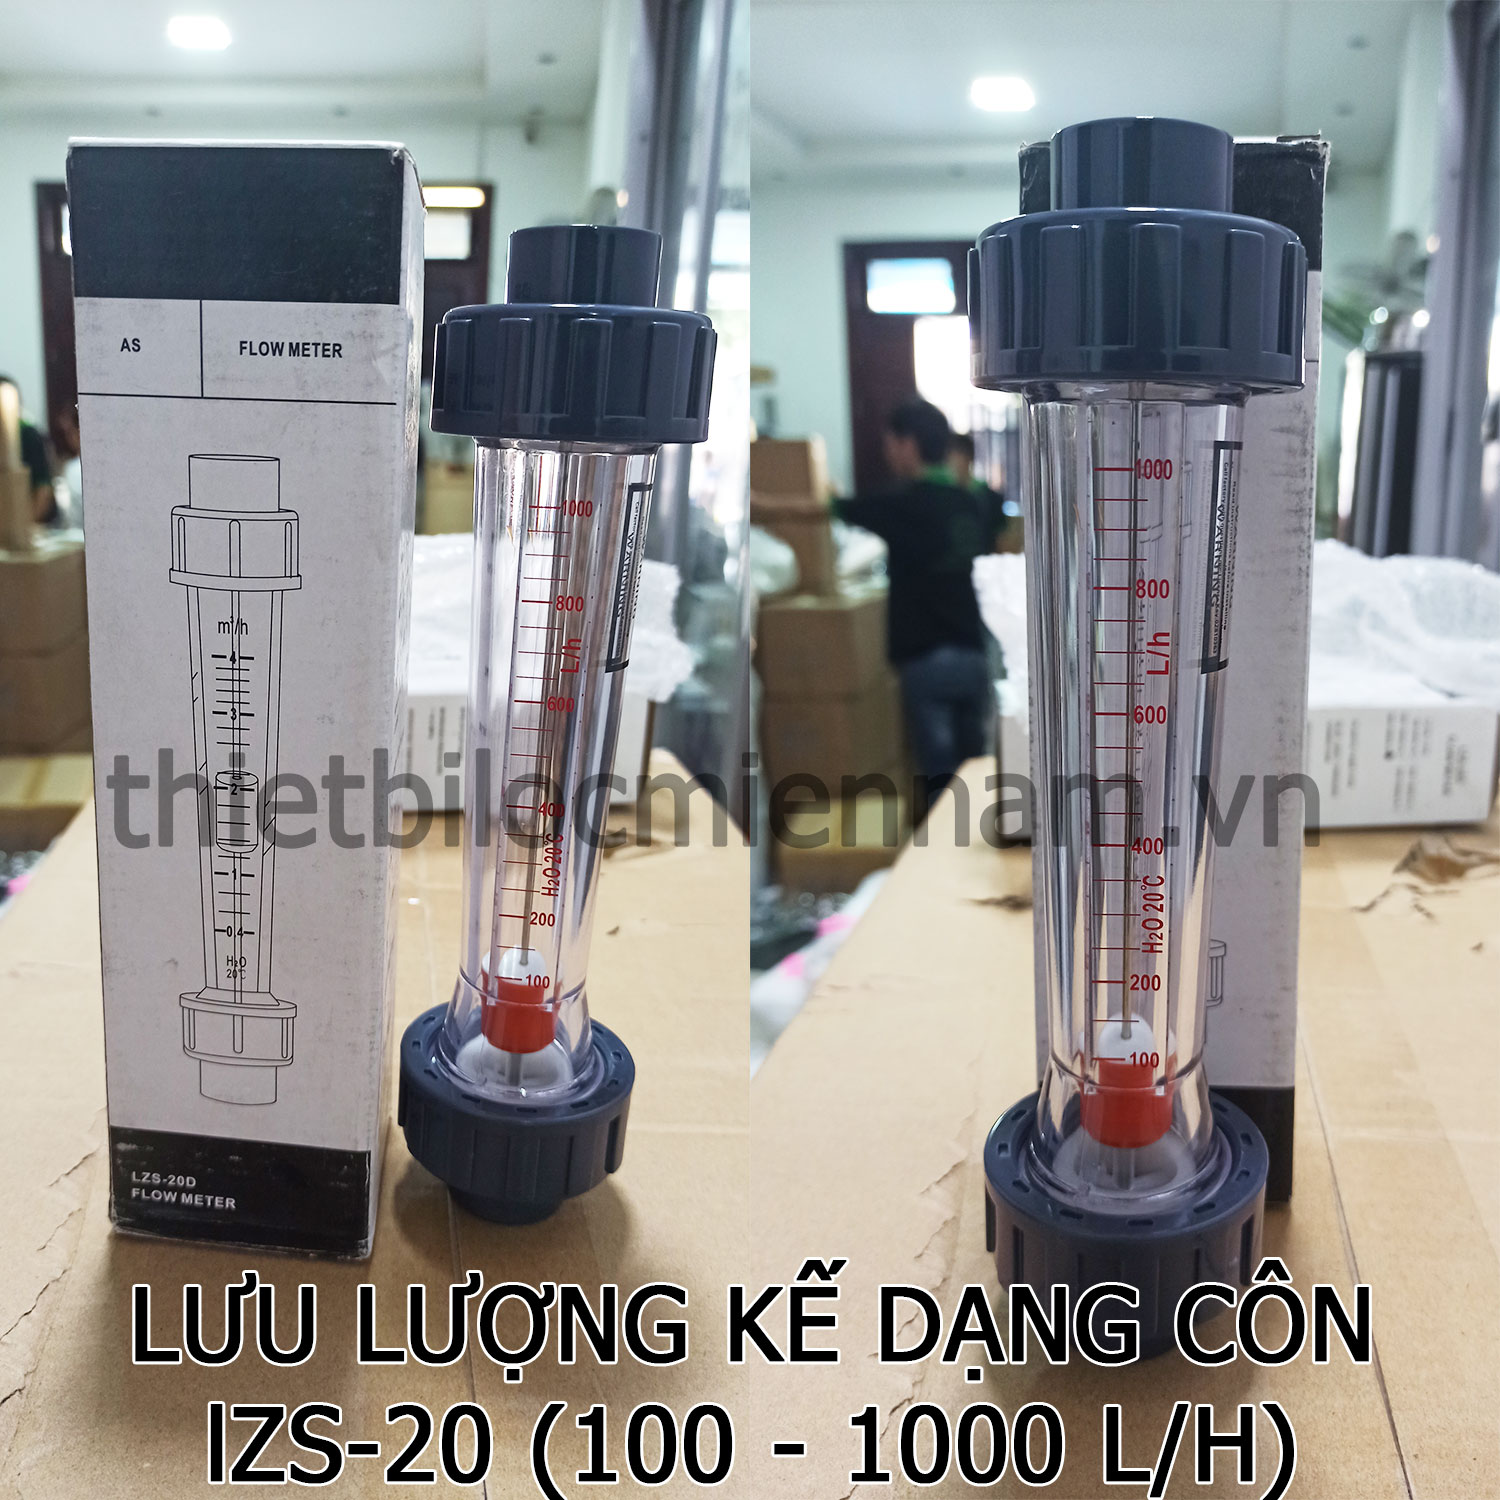 Lưu lượng kế dạng côn LZS-20 (100-1000 l/h)